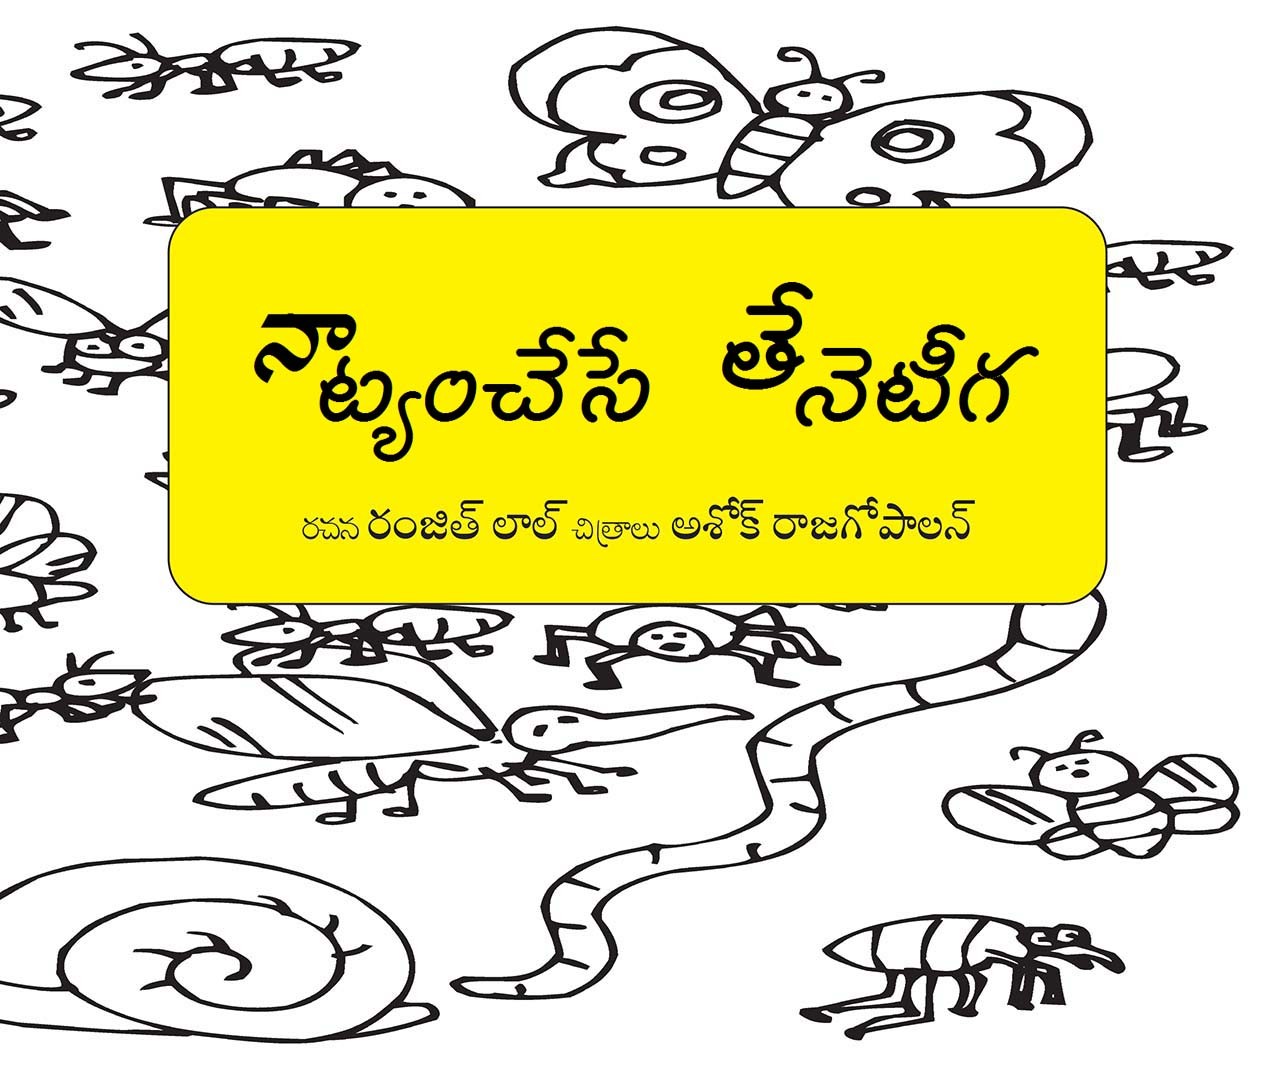 Dancing Bees/Naatyamchese Theneteegalu (Telugu)